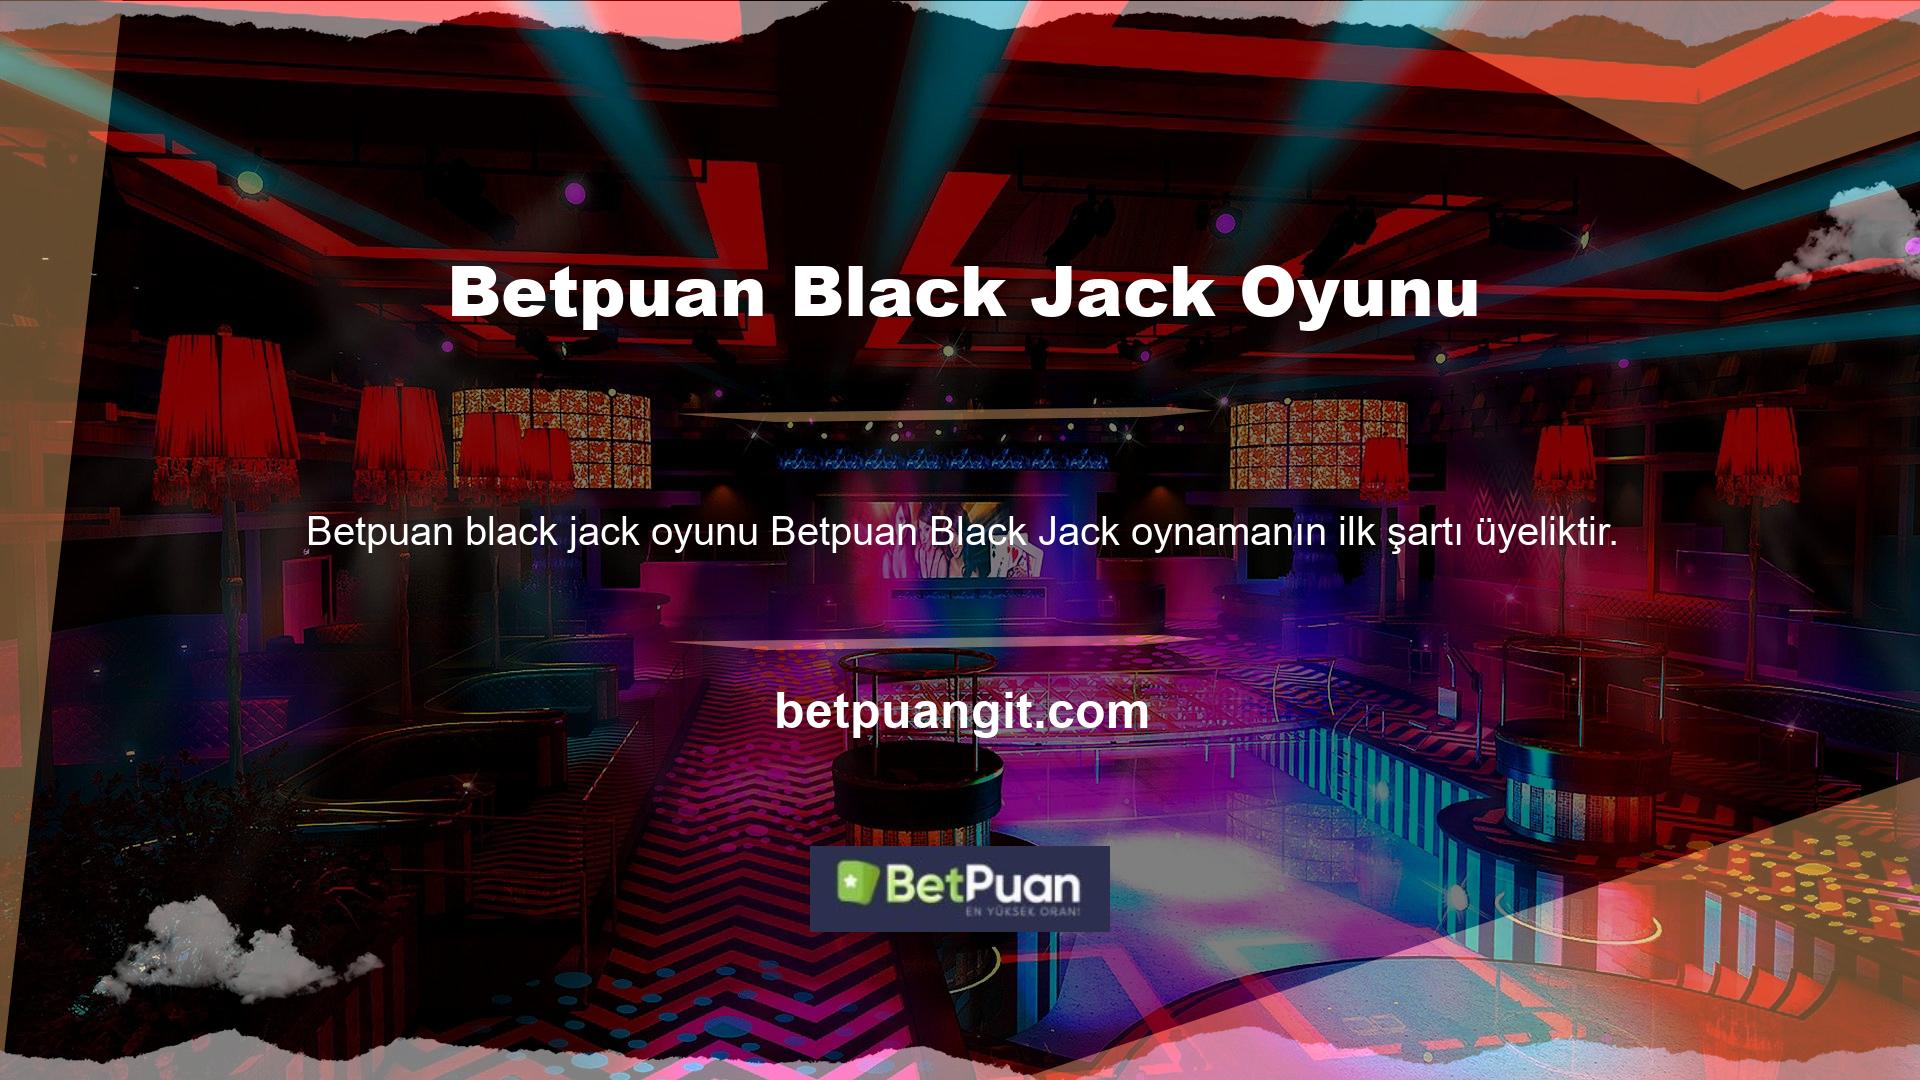 Betpuan oyunu "Betpuan Black Jack" in herhangi bir üyesi bu ürünü kullanabilir